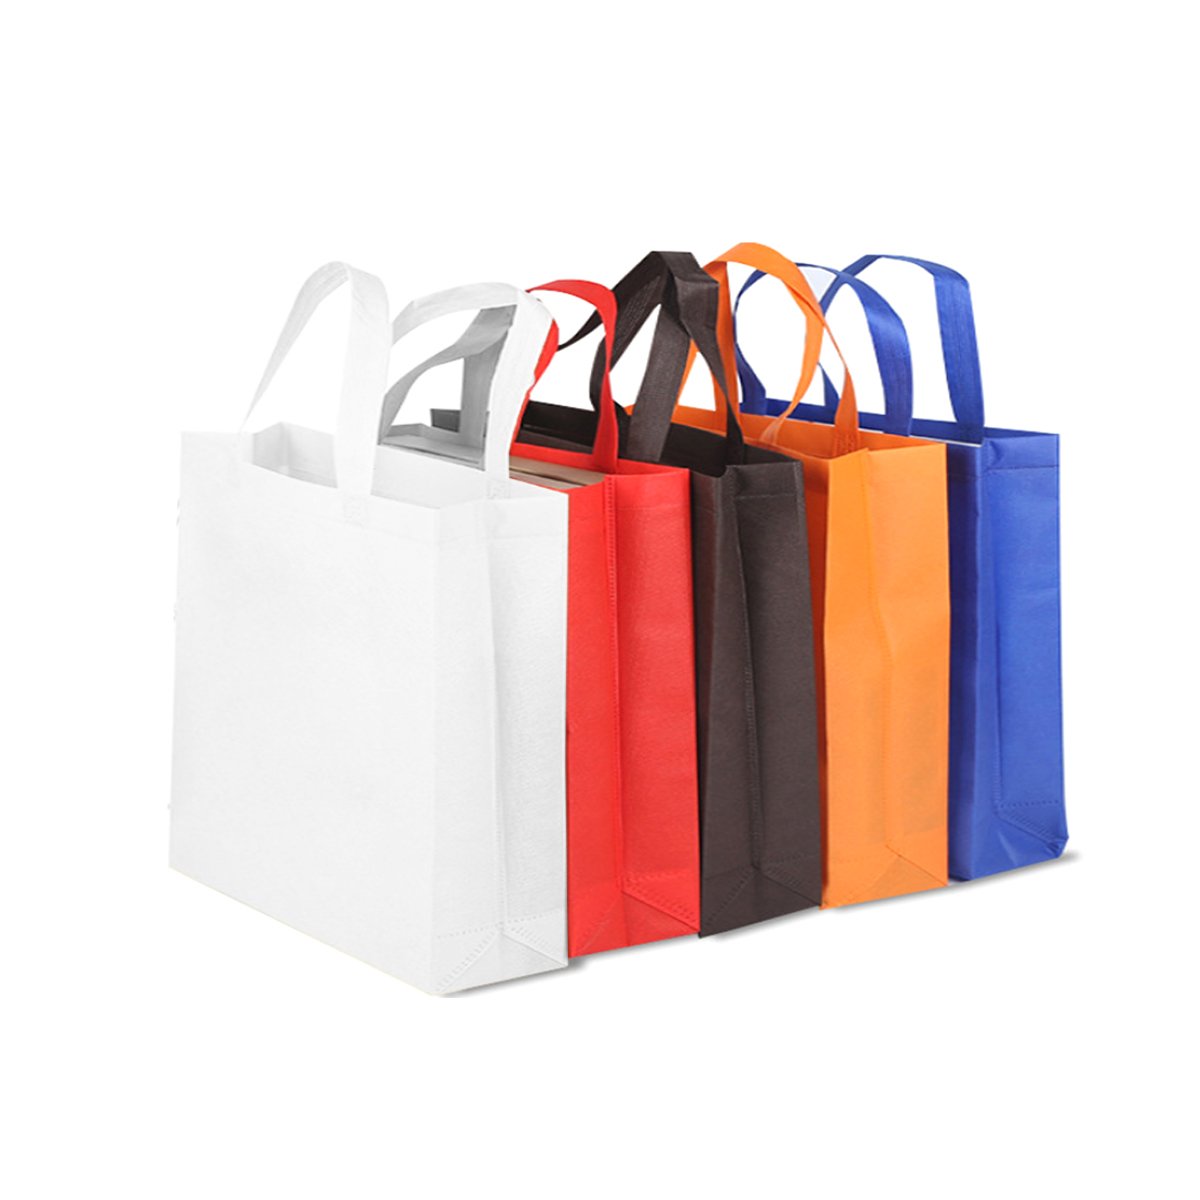 A3 Size Non-Woven Shopping Bag